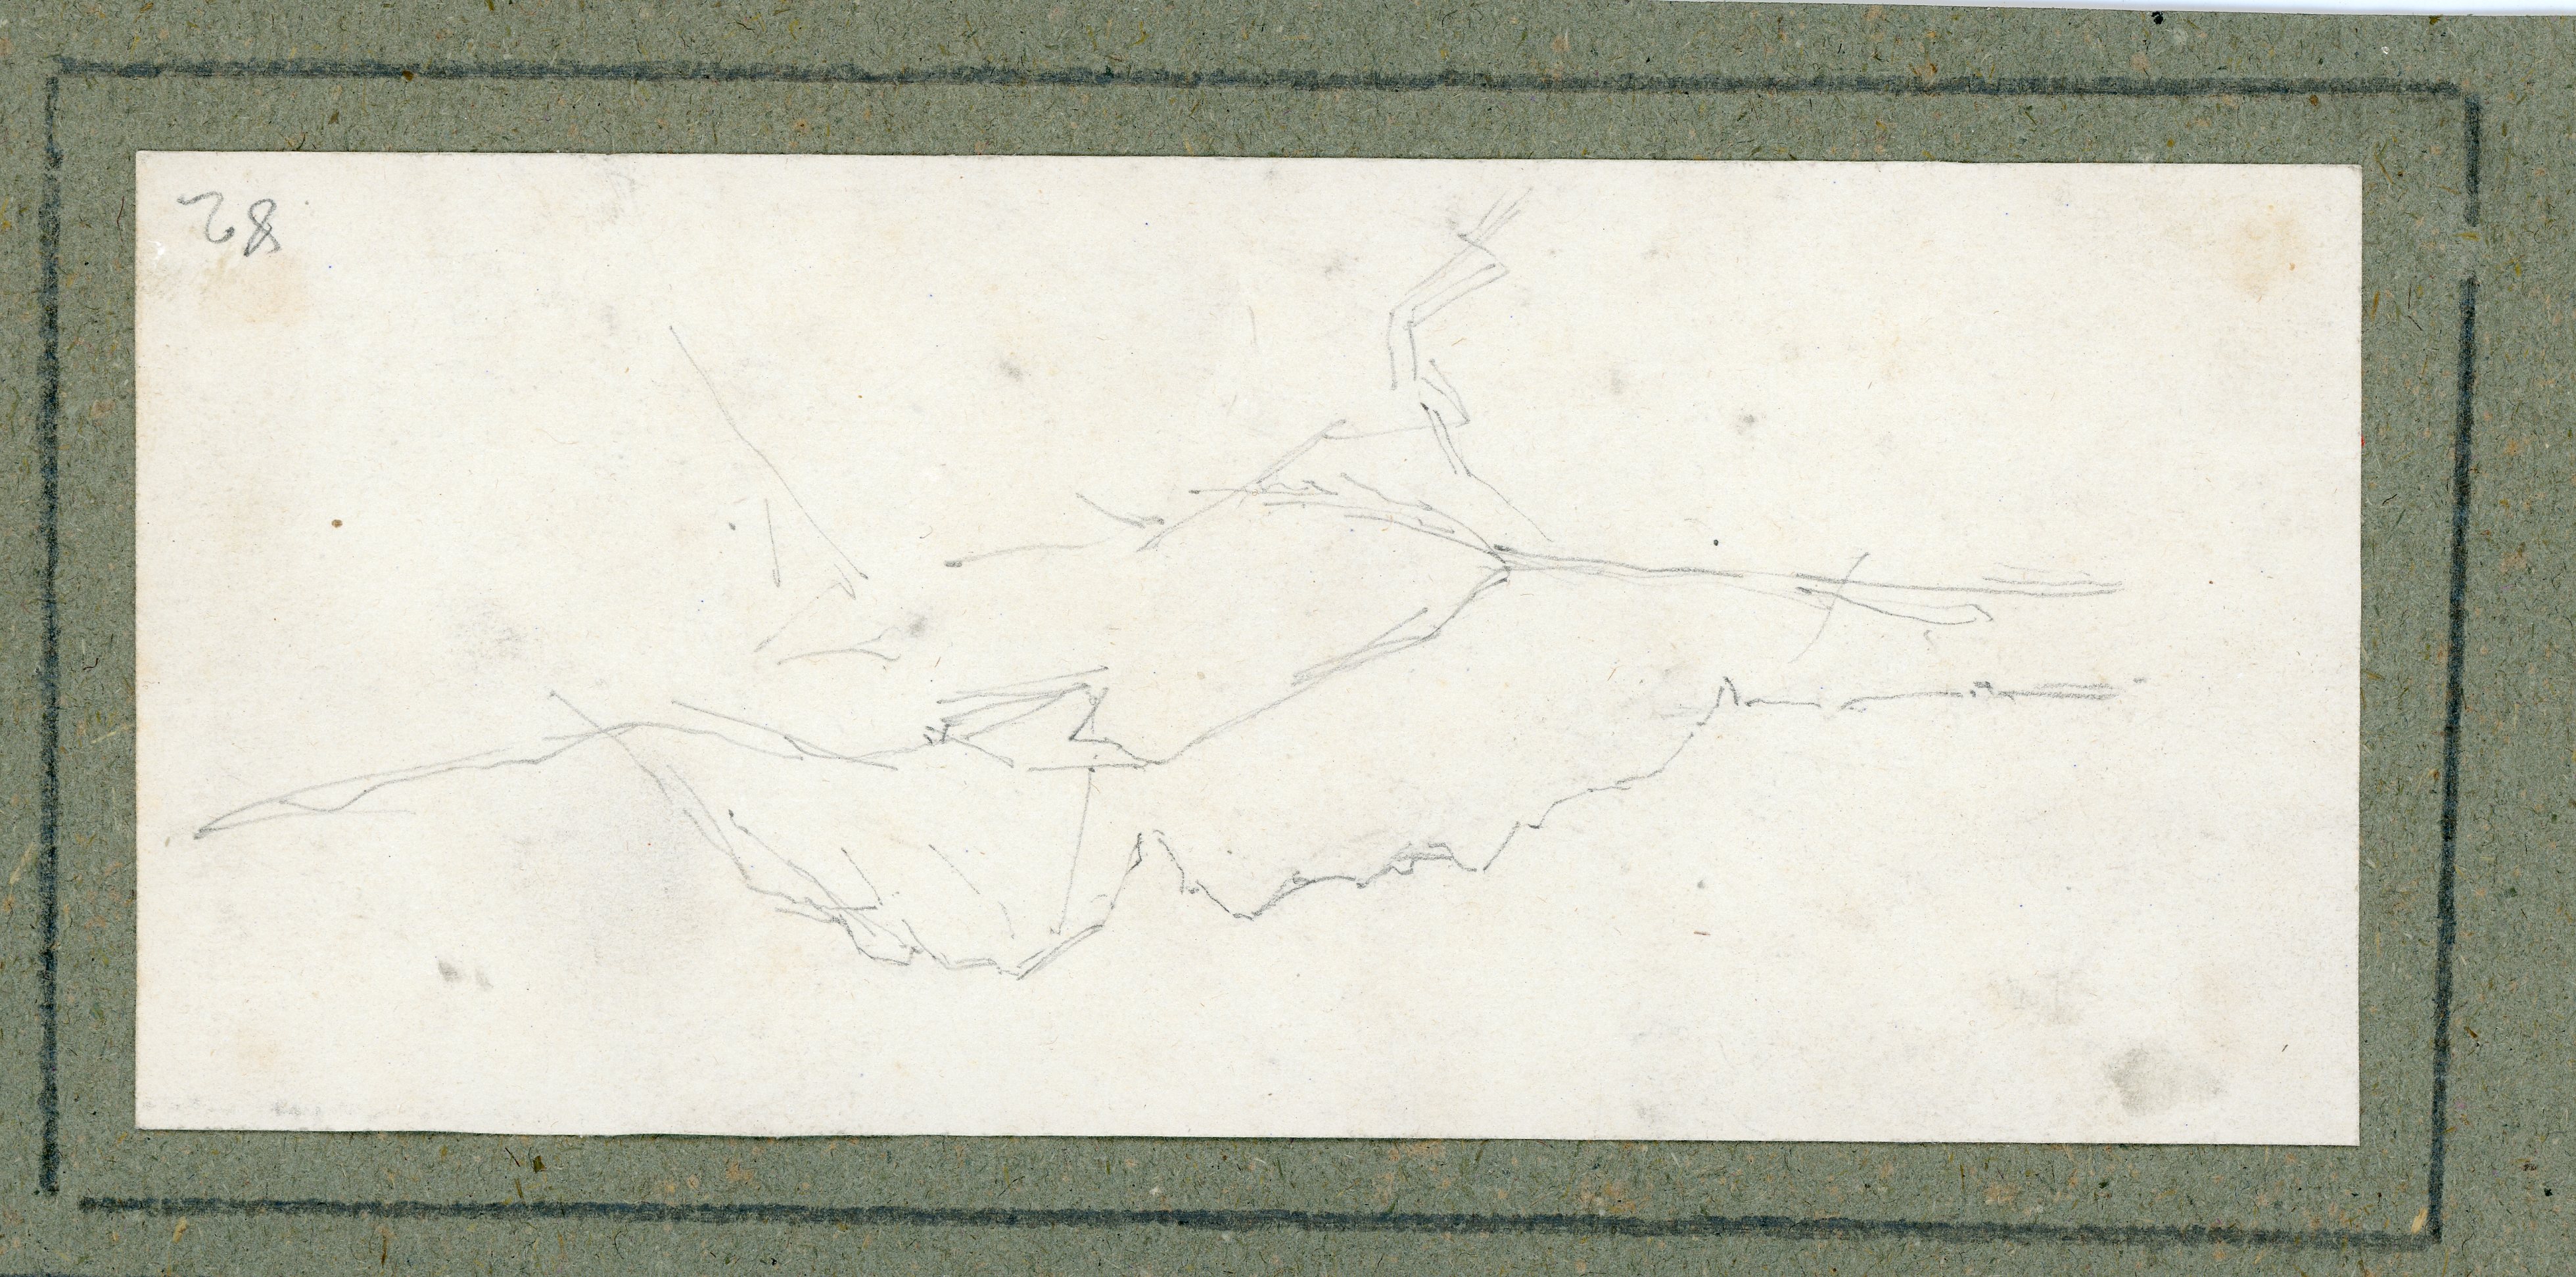 Profilo di montagne, paesaggio (disegno) di Boggiani, Guido - ambito Italia settentrionale (seconda metà XX)